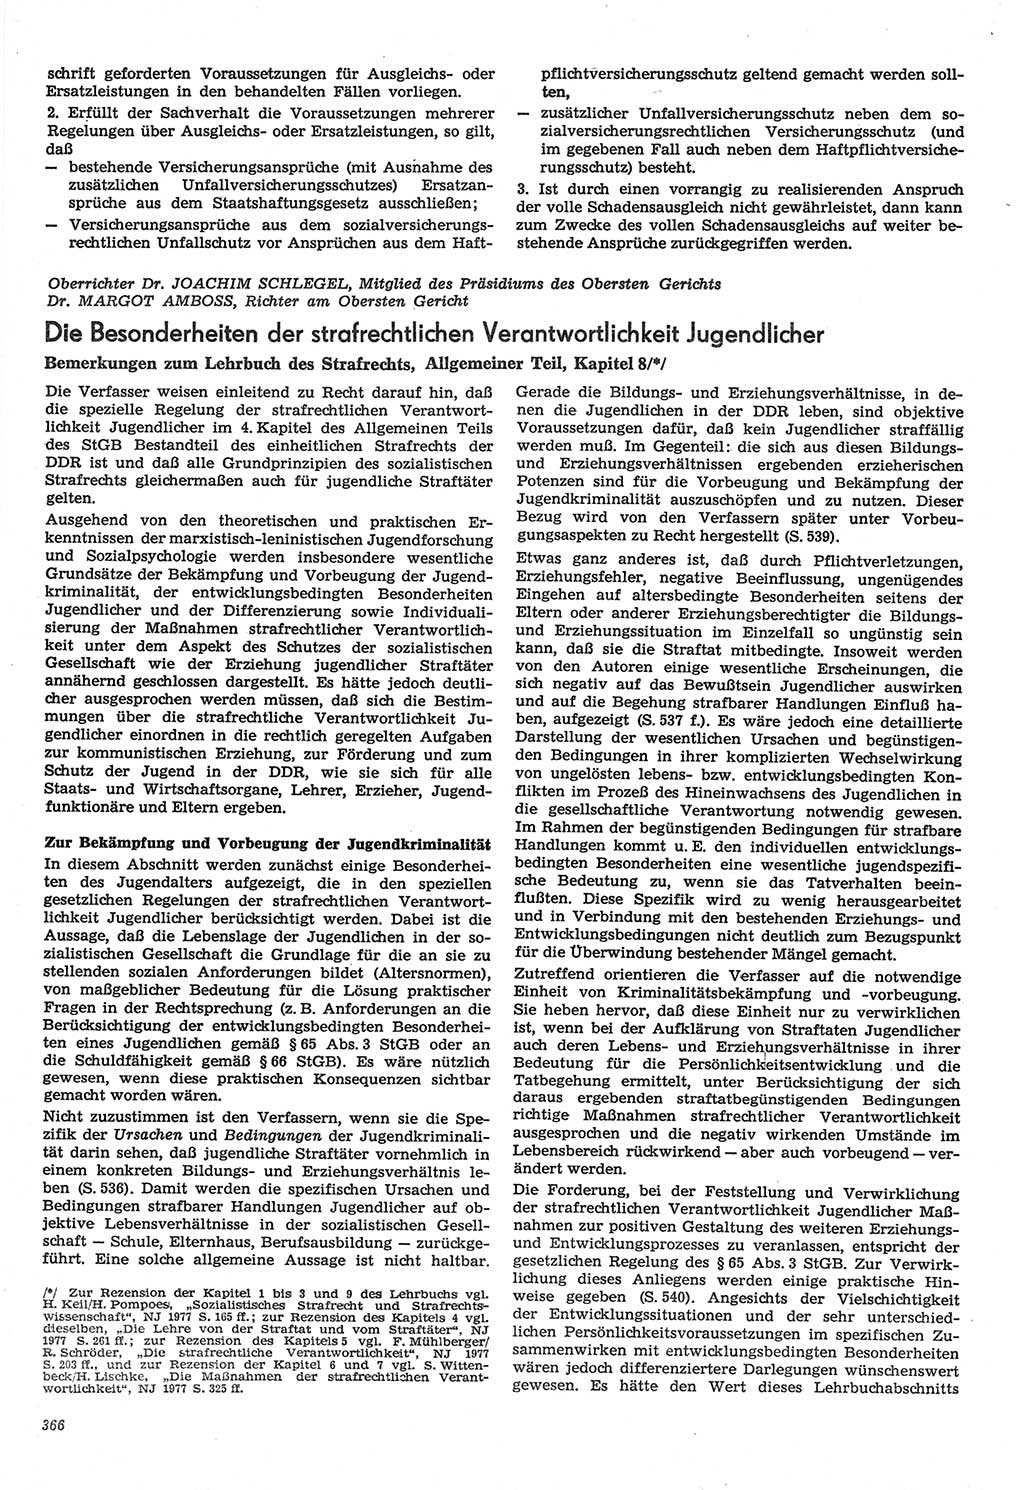 Neue Justiz (NJ), Zeitschrift für Recht und Rechtswissenschaft-Zeitschrift, sozialistisches Recht und Gesetzlichkeit, 31. Jahrgang 1977, Seite 366 (NJ DDR 1977, S. 366)